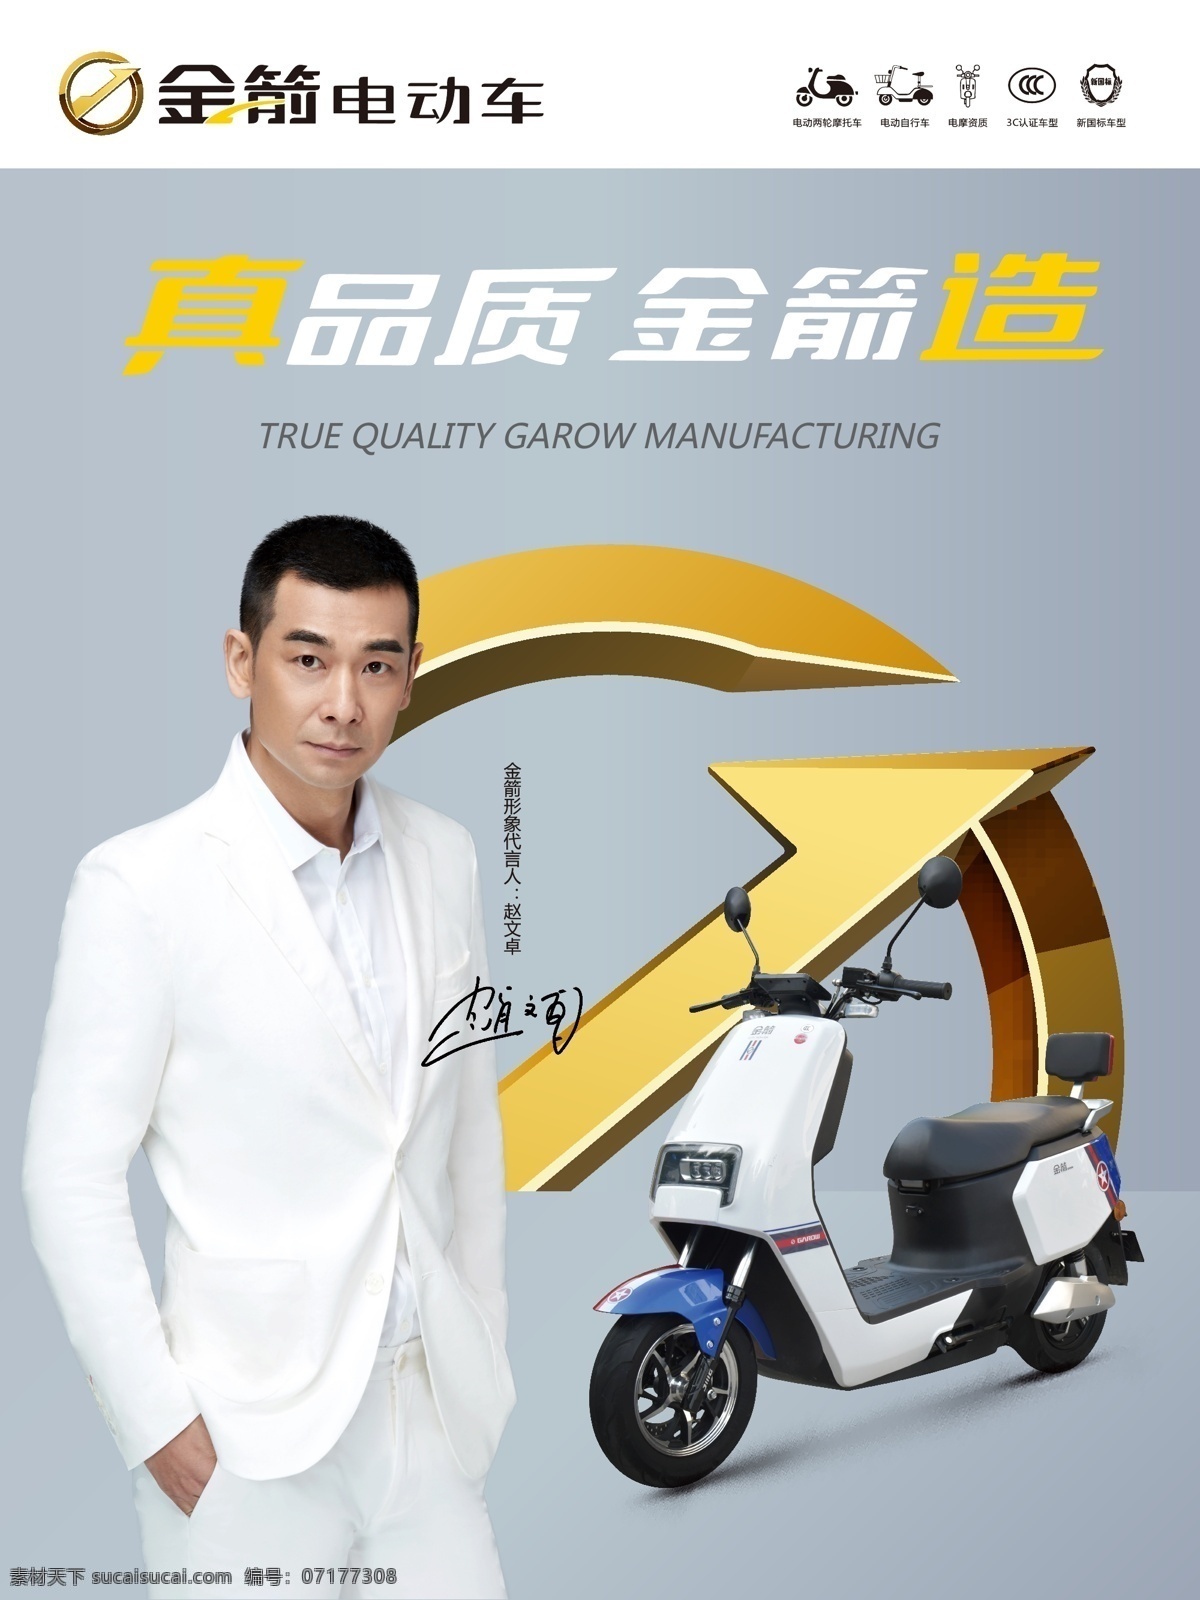 金箭 电动车 真 品质 造 真品质 金箭造 赵文卓 代言 新国标 3c认证 电摩 品牌广告